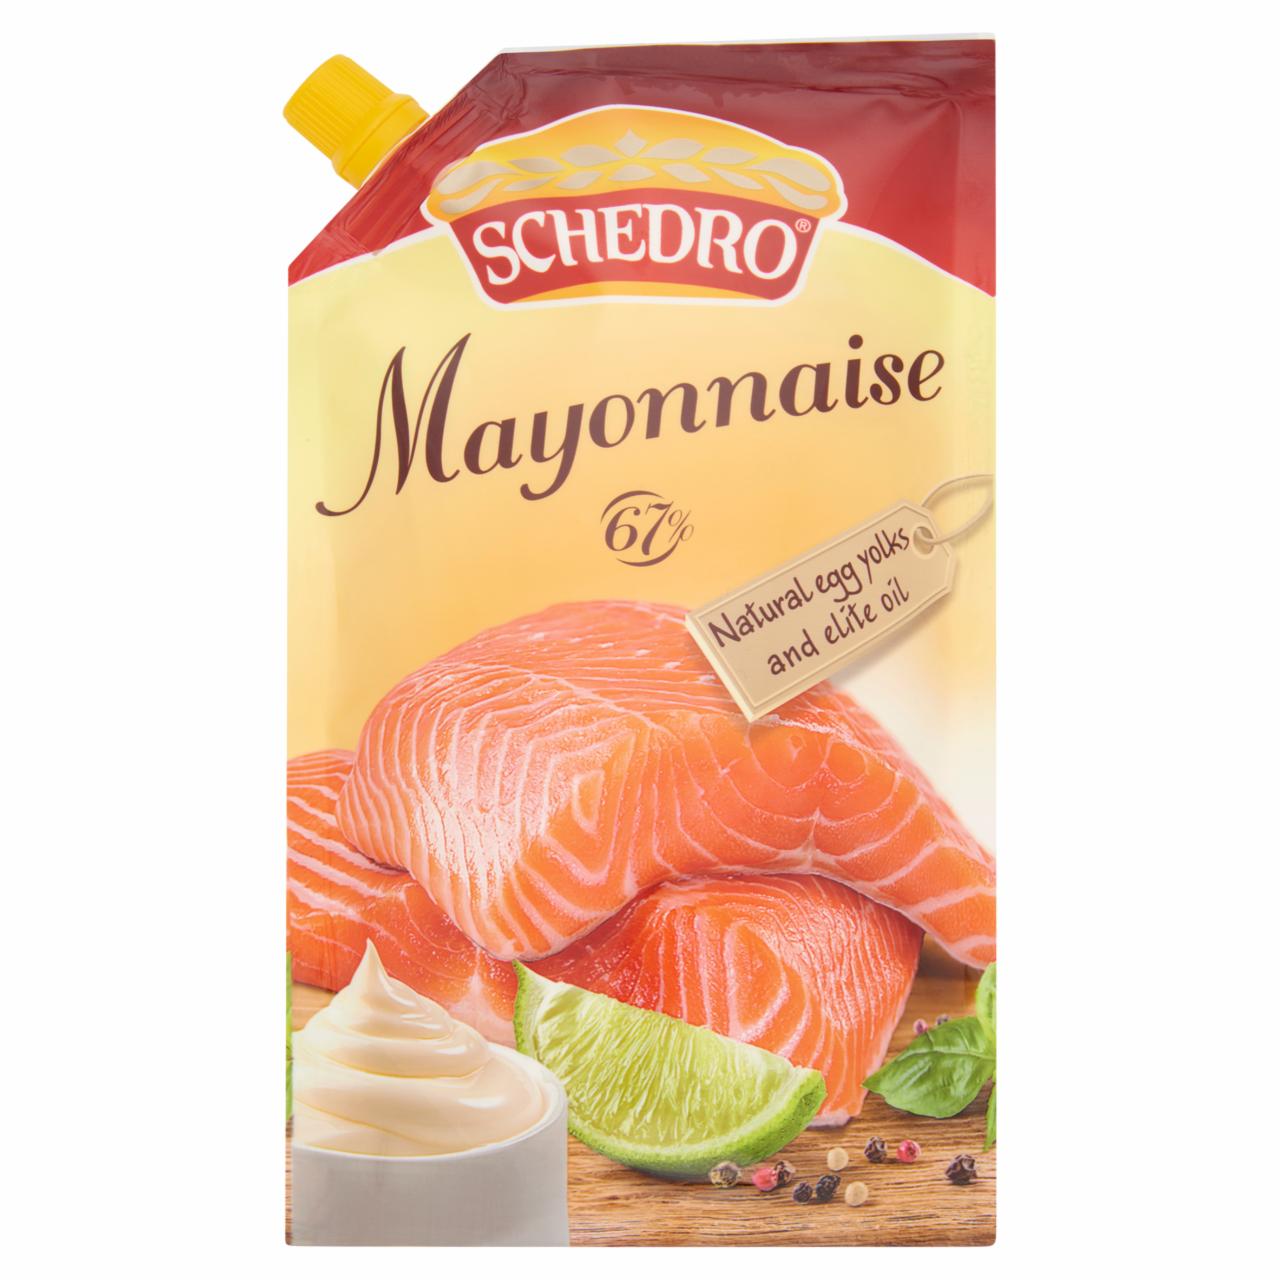 Képek - Schedro provanszi majonéz 400 g